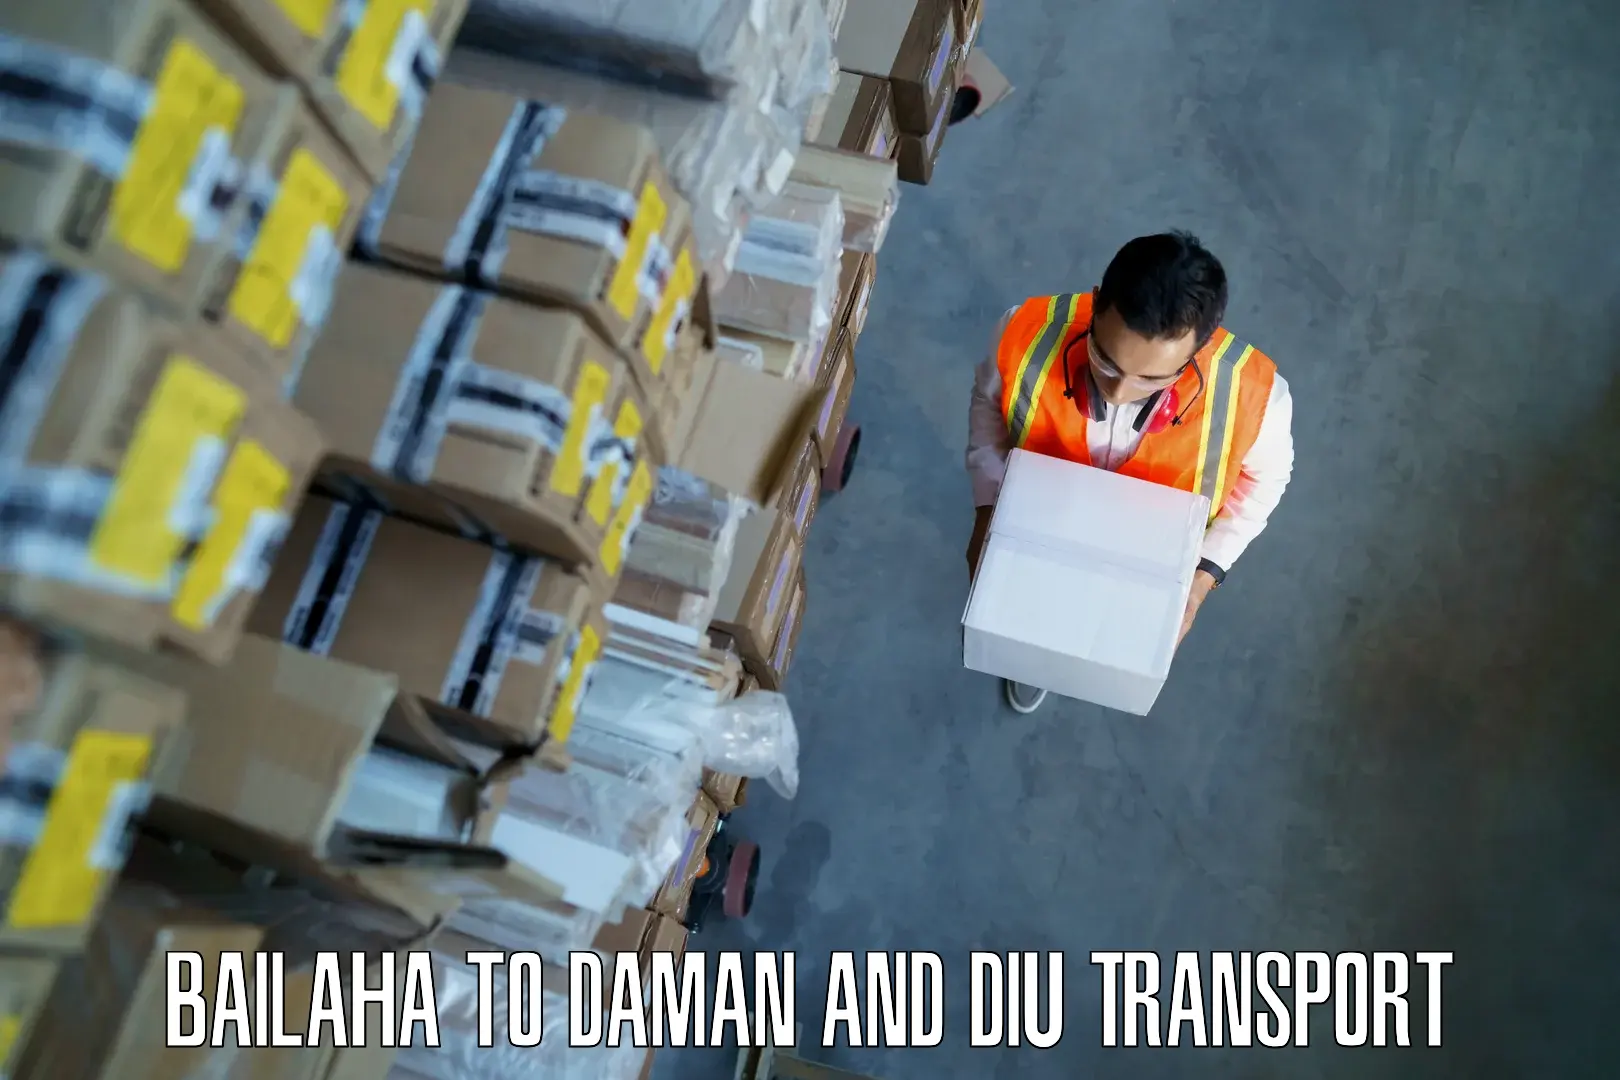 Daily transport service Bailaha to Daman